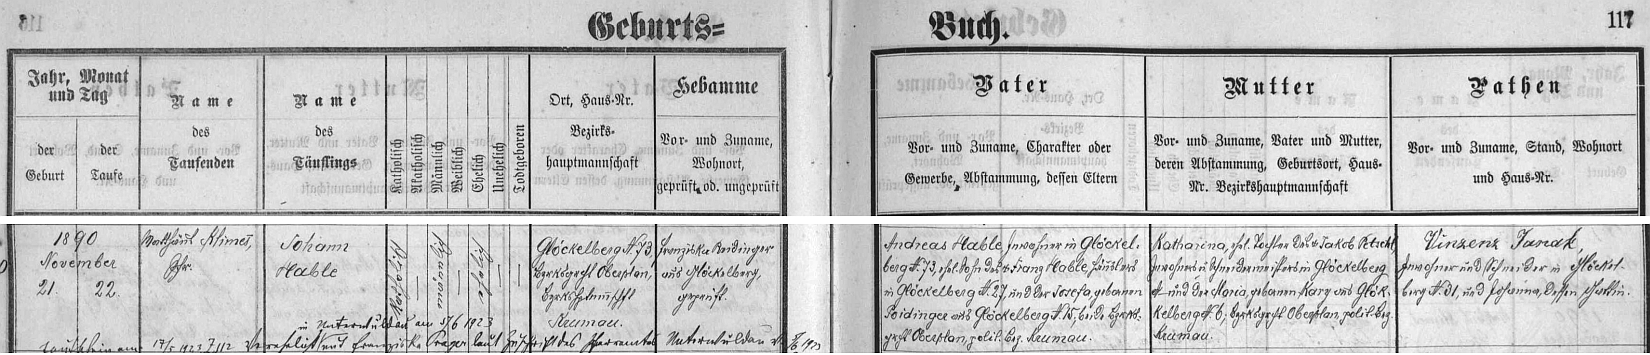 Záznam glöckelberské křestní matriky o narození otcově dne 21. listopadu 1890 (den nato ho ve zdejším kostele pokřtil farář Matthäus Klimesch /*7. listopadu 1853 ve Stupné /dnes část městyse Křemže, sám se v matrice píše Klimeš/) v glöckelberském stavení čp. 73. kde byl podruhem jeho otec Andreas Hable, syn chalupníka Franze Hableho ze zdejšího čp. 27 a Josefy, roz. Poidingerové ze zdejšího čp. 15, matka chlapcova Katharina byla pak dcerou Jakoba Petschla, podruha a krejčovského mistra v Glöckelbergu (čp. v matrice nečitelné) a Marie, roz- Kary ze zdejšího čp. 6